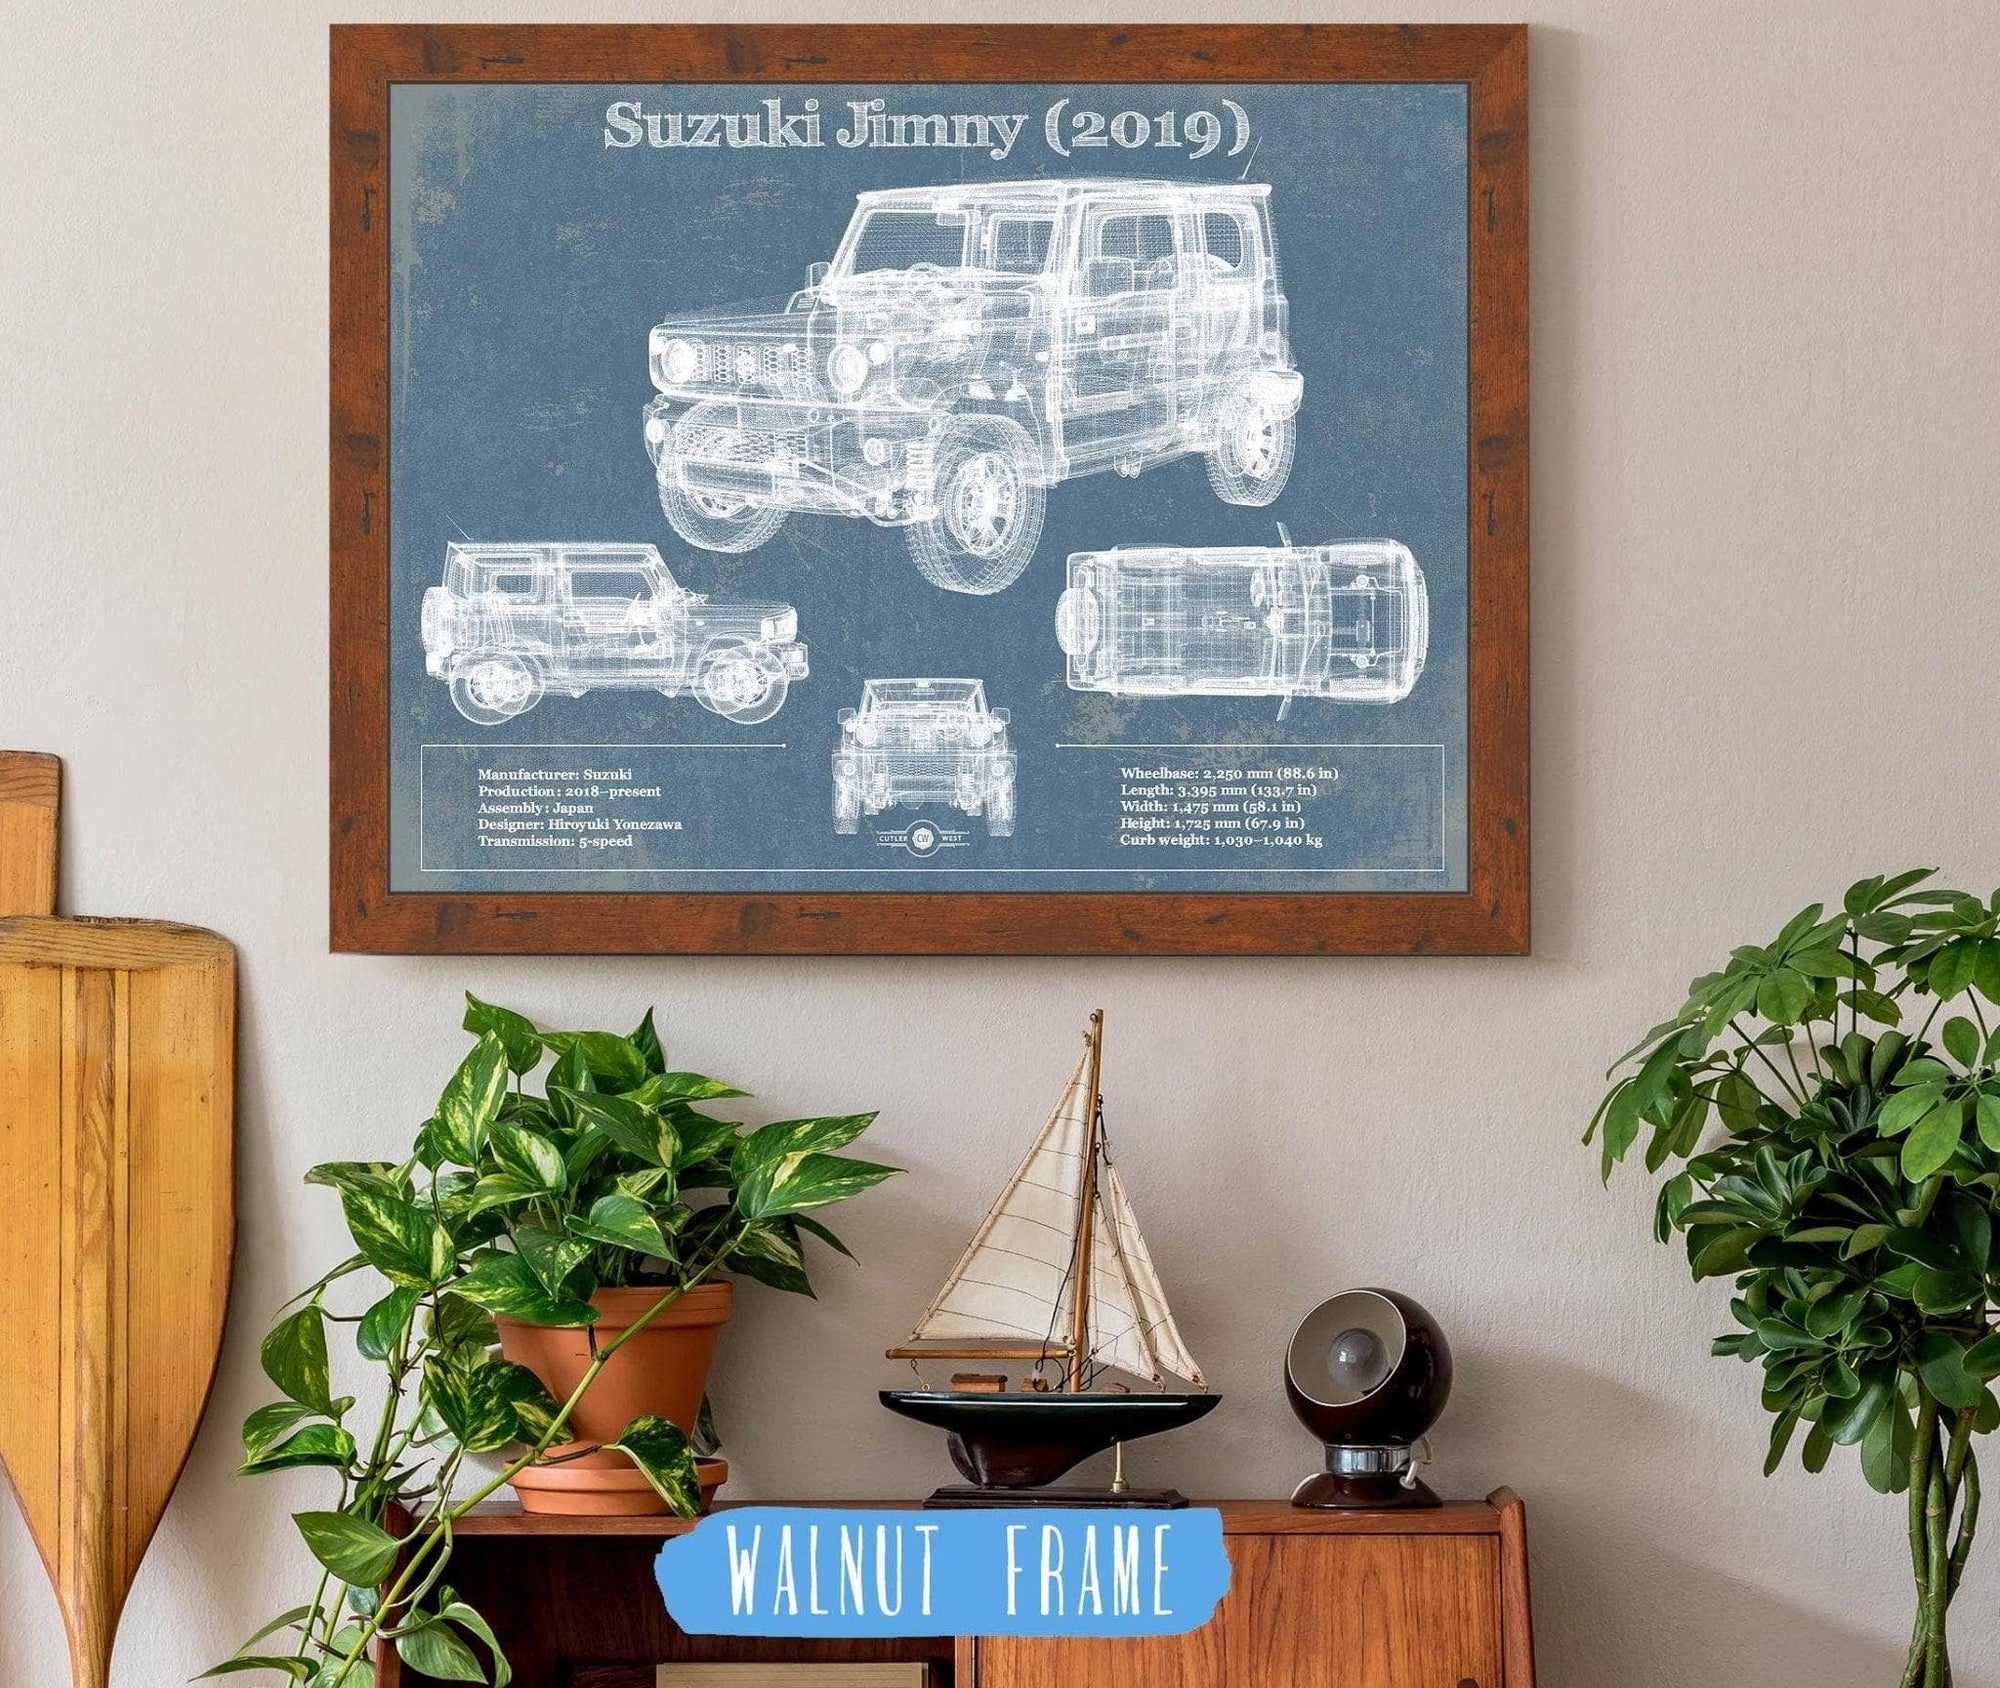 Cutler West Vehicle Collection 14" x 11" / Walnut Frame Suzuki Jimney 2019 Vintage Blueprint Auto Print 845000184_29007